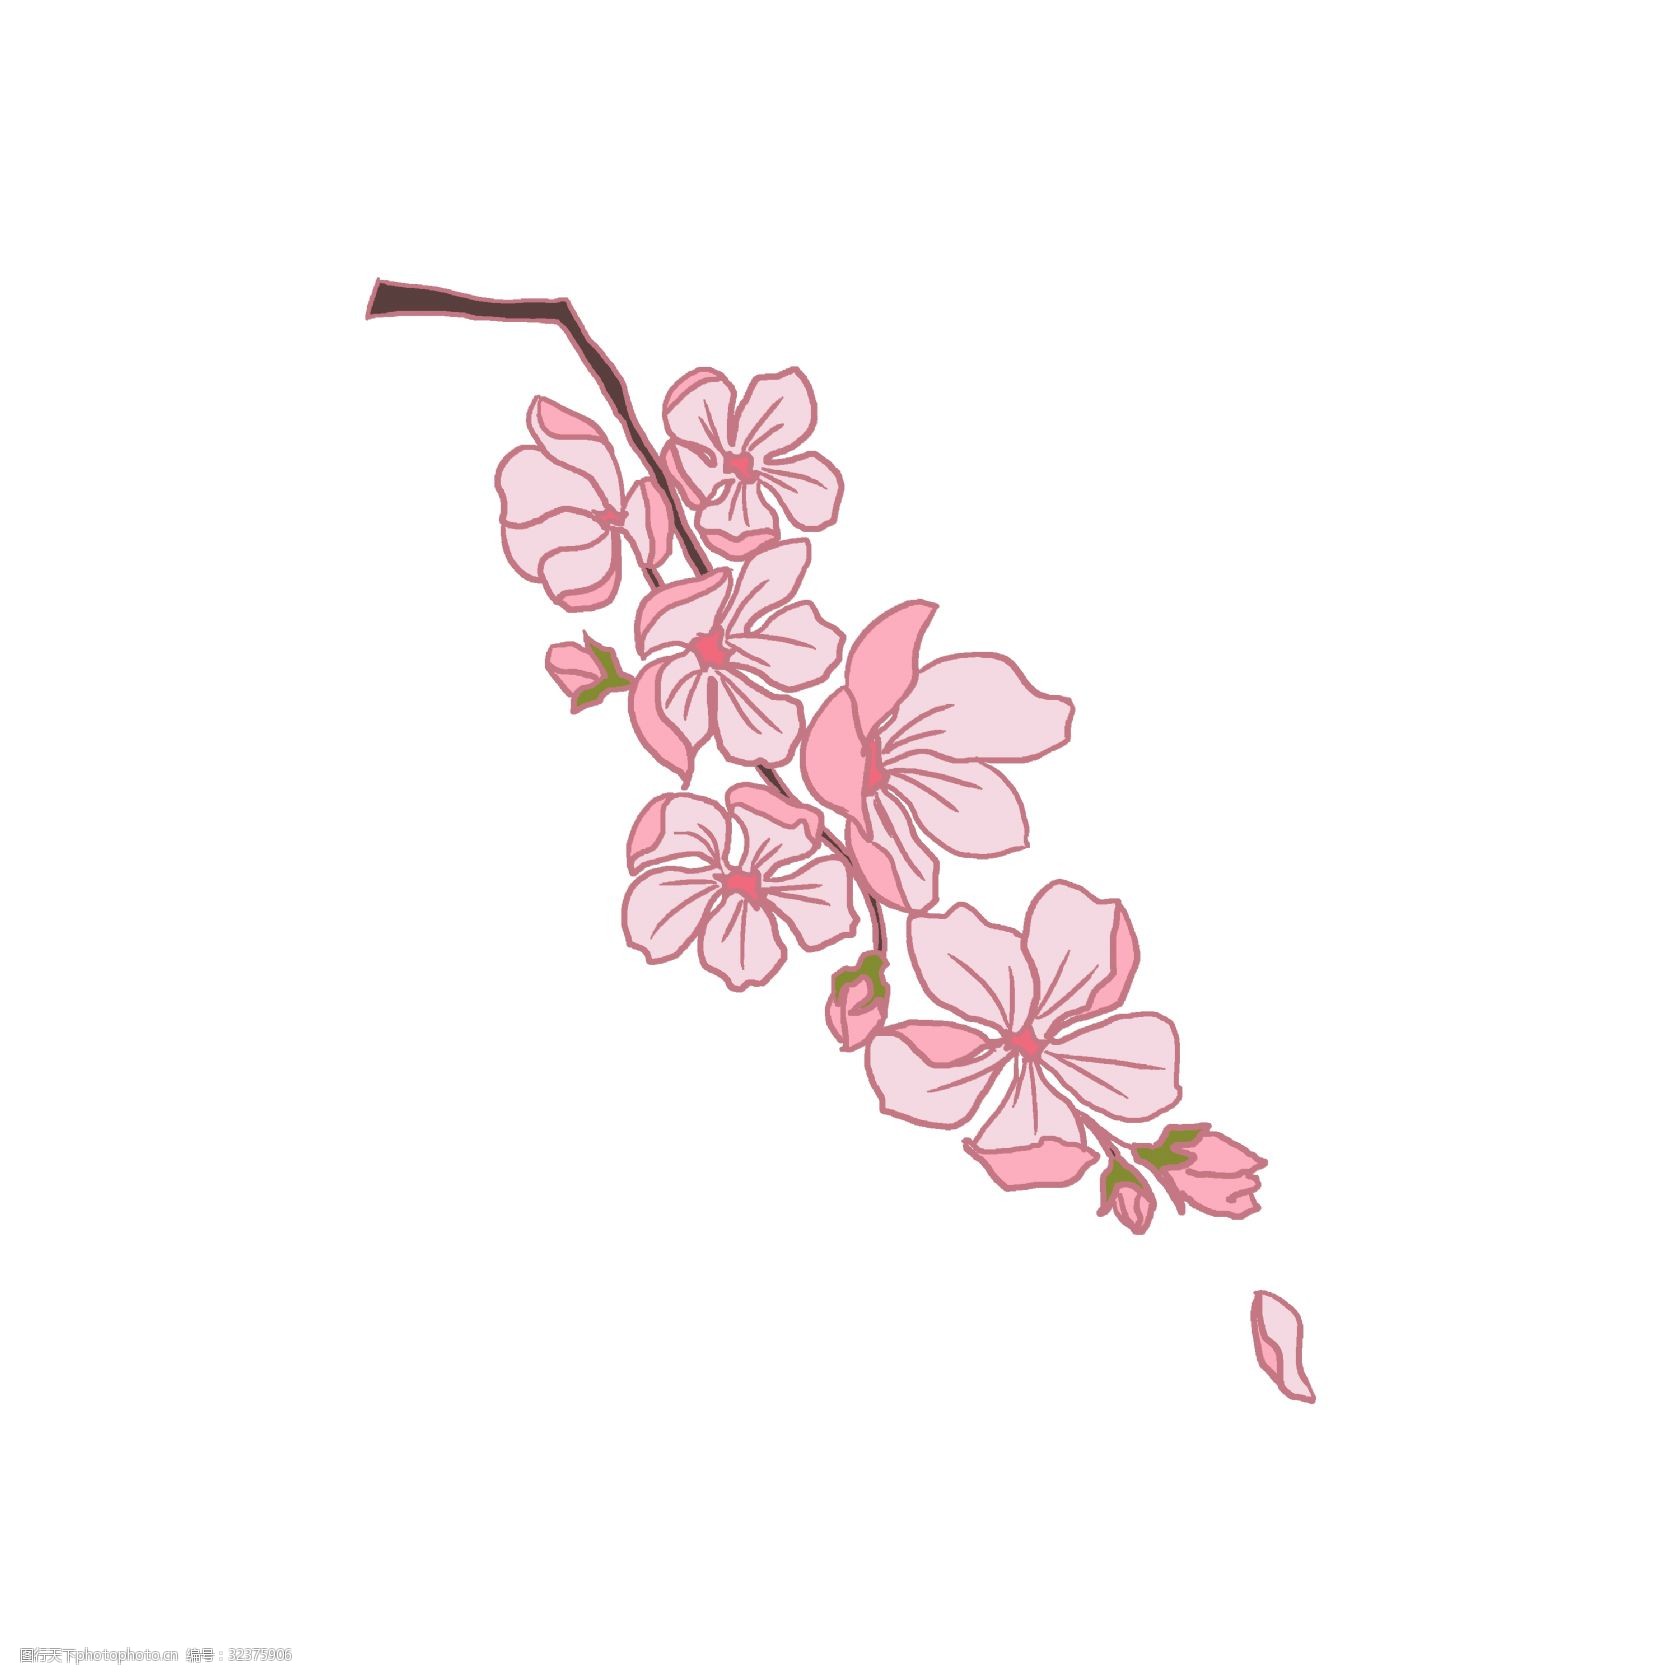 关键词:飘落的粉色樱花插画 飘落的樱花 卡通插画 樱花插画 花朵插画